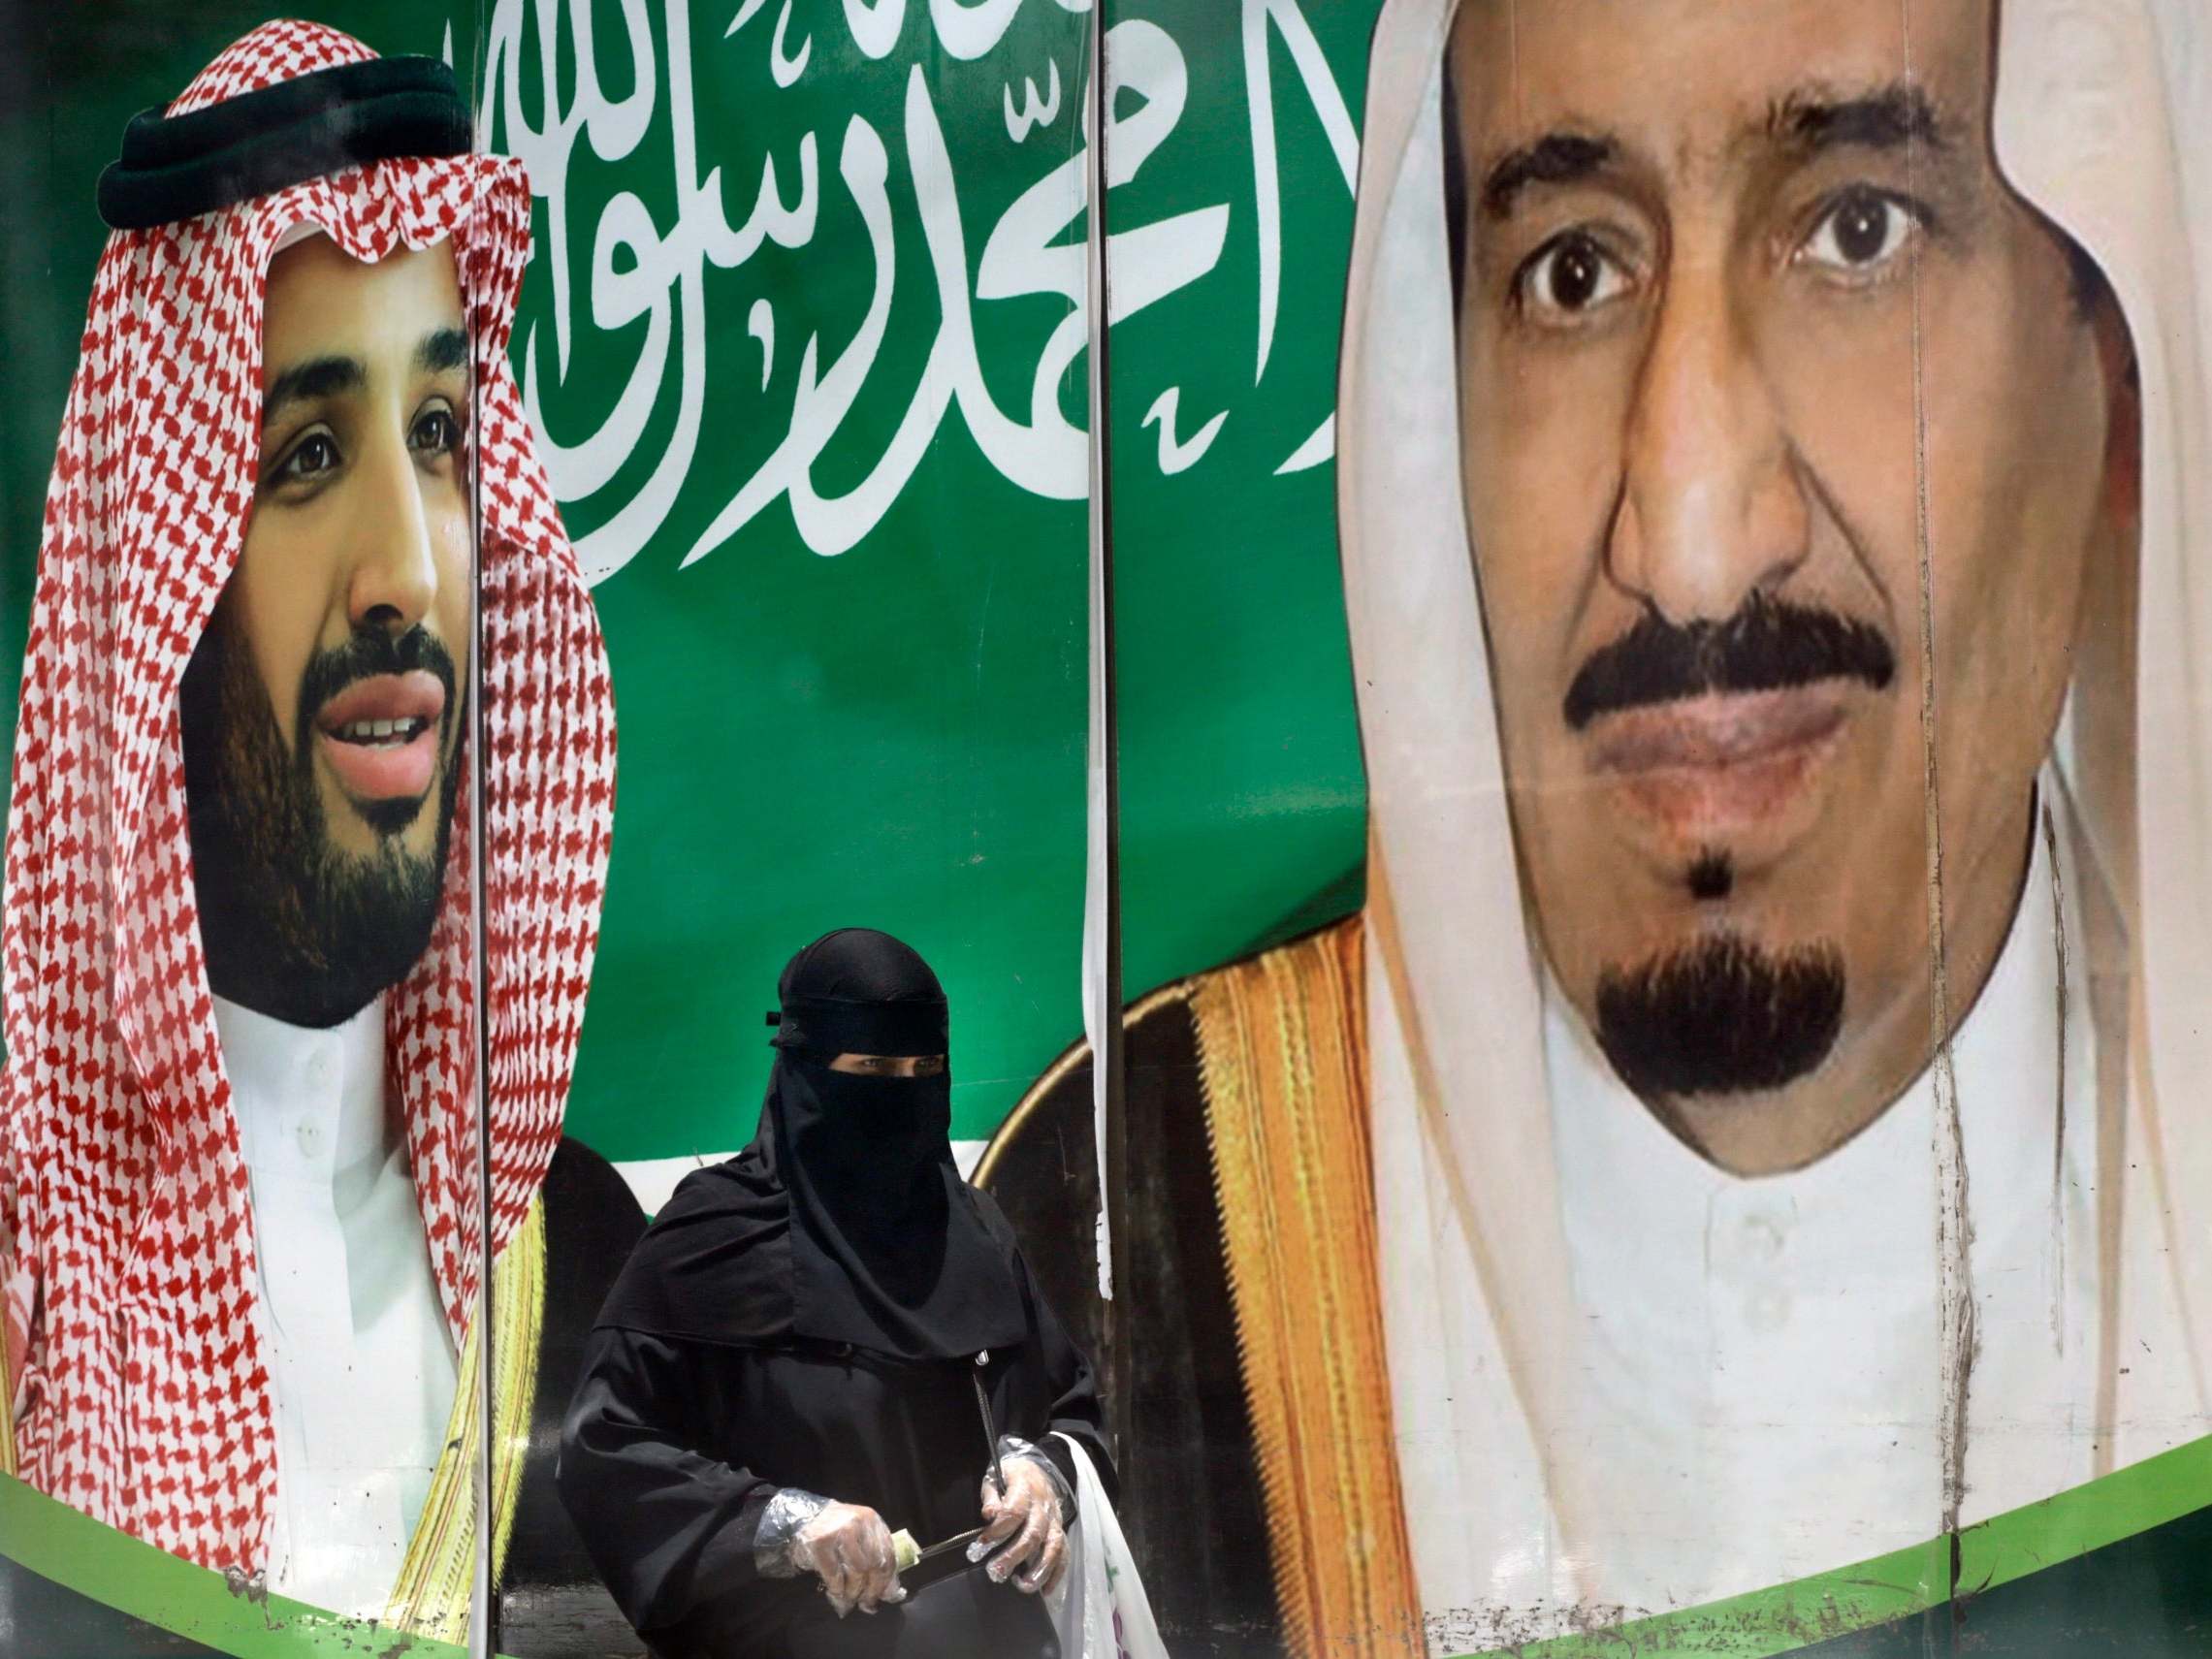 A poster in Riyadh of Prince Mohammed bin Salman (left) and King Salman bin Abdulaziz